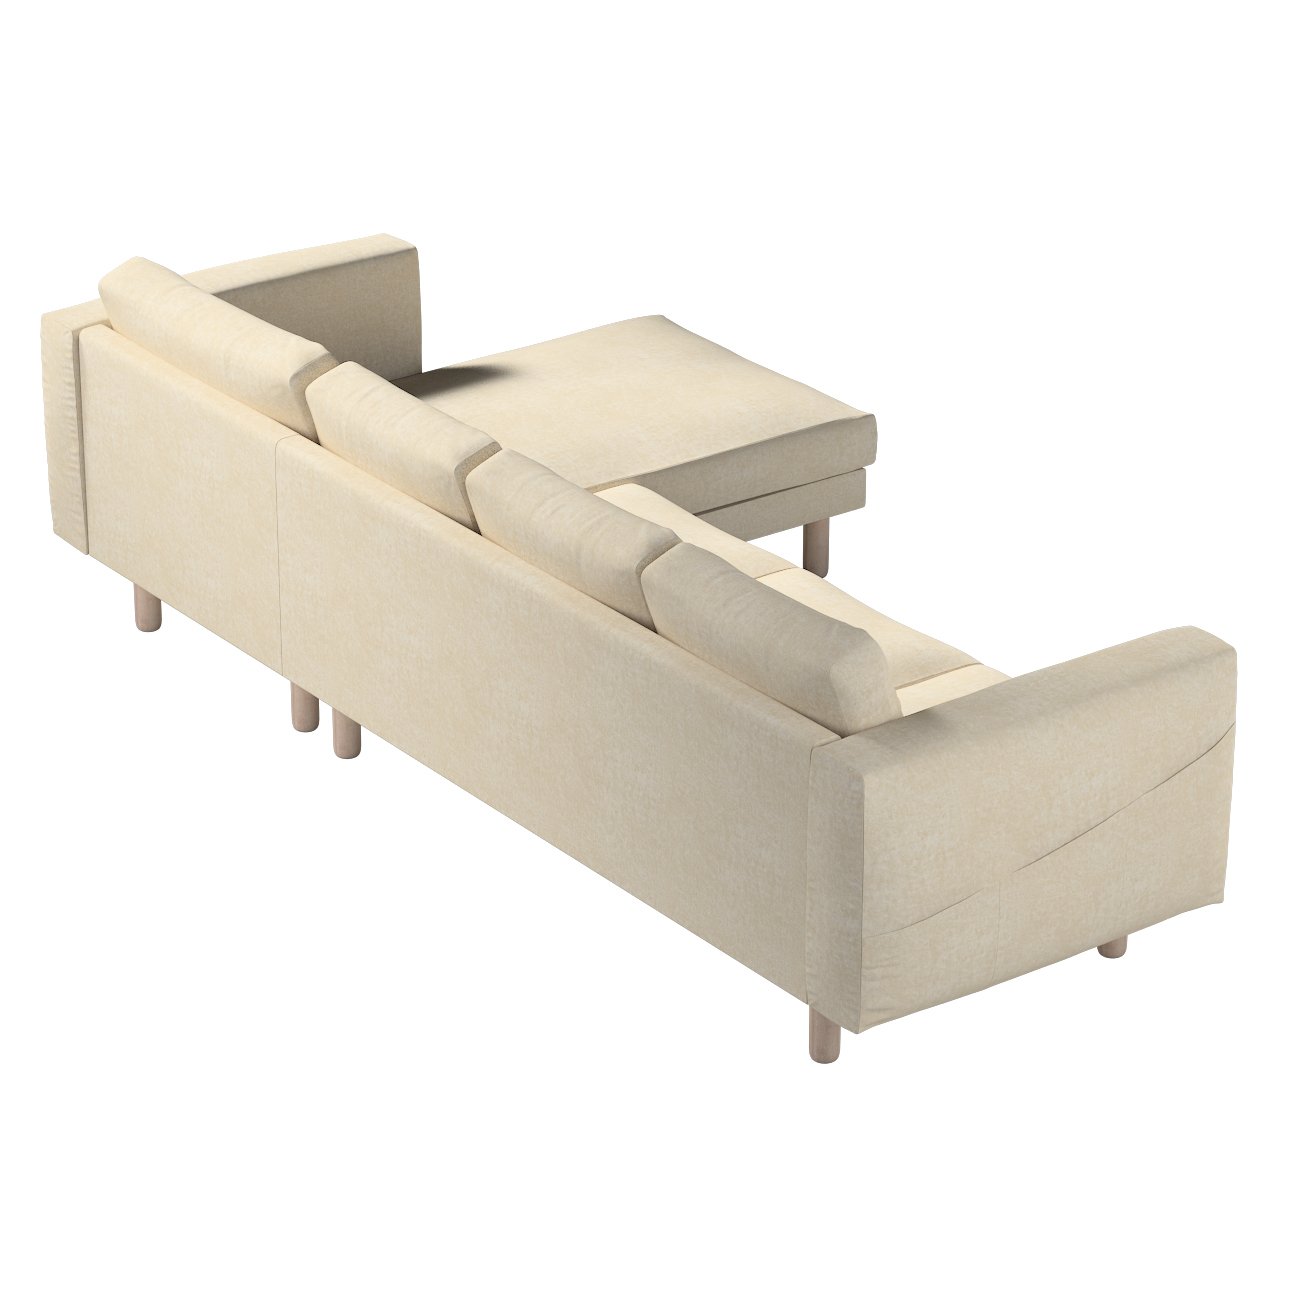 Bezug für Norsborg 4-Sitzer Sofa mit Recamiere, grau-beige, Norsborg Bezug günstig online kaufen